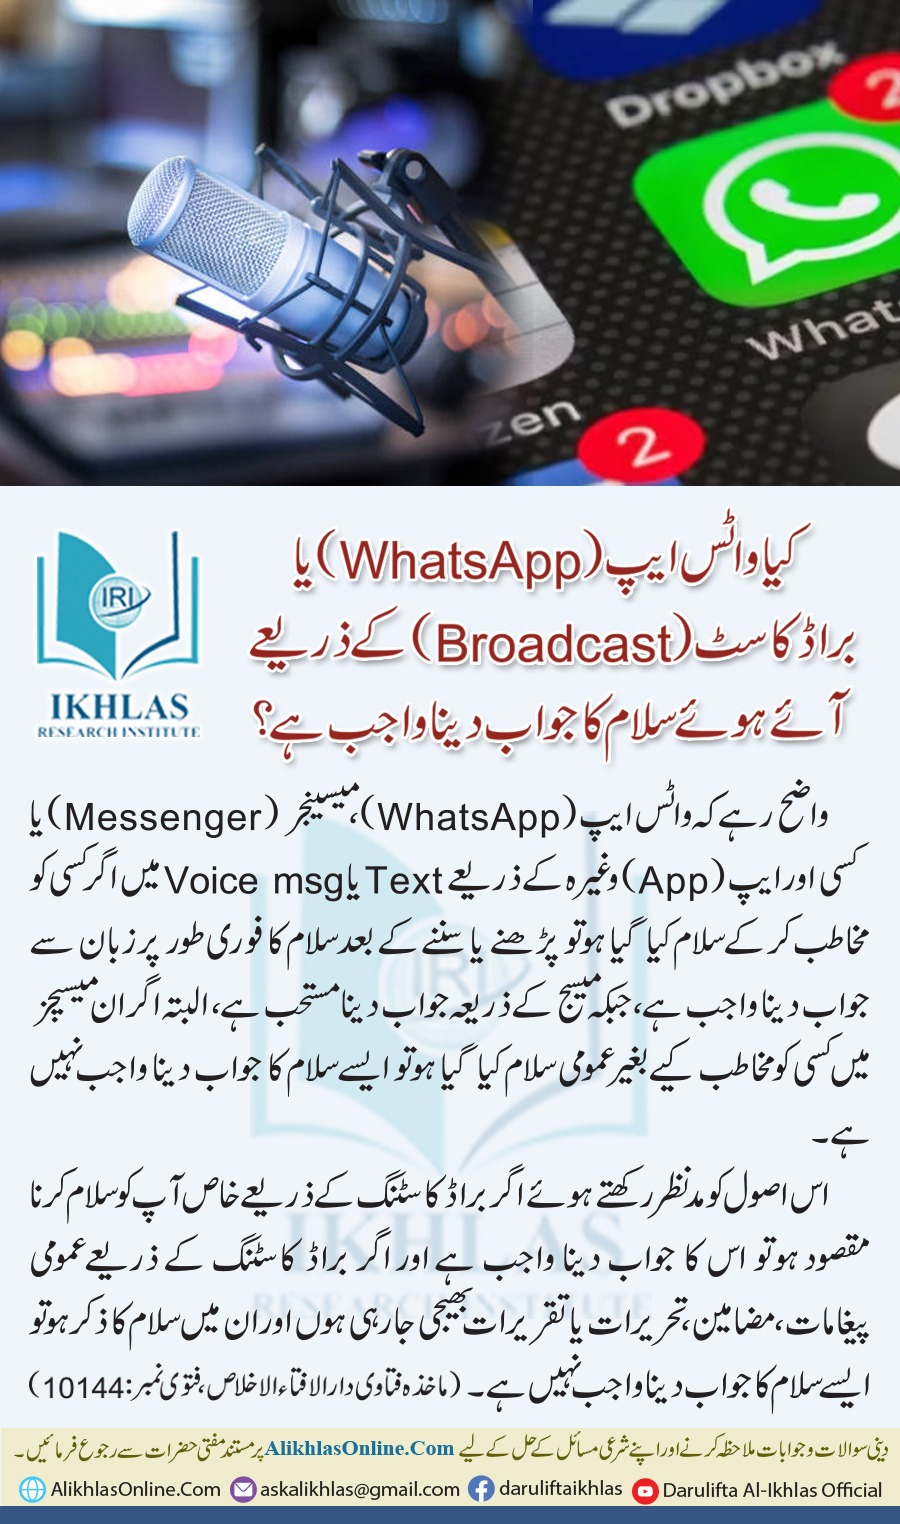 واٹس ایپ (Broadcast) یا براڈ کاسٹ (WhatsApp) کے ذریعے آئے ہوئے سلام کا جواب دینا